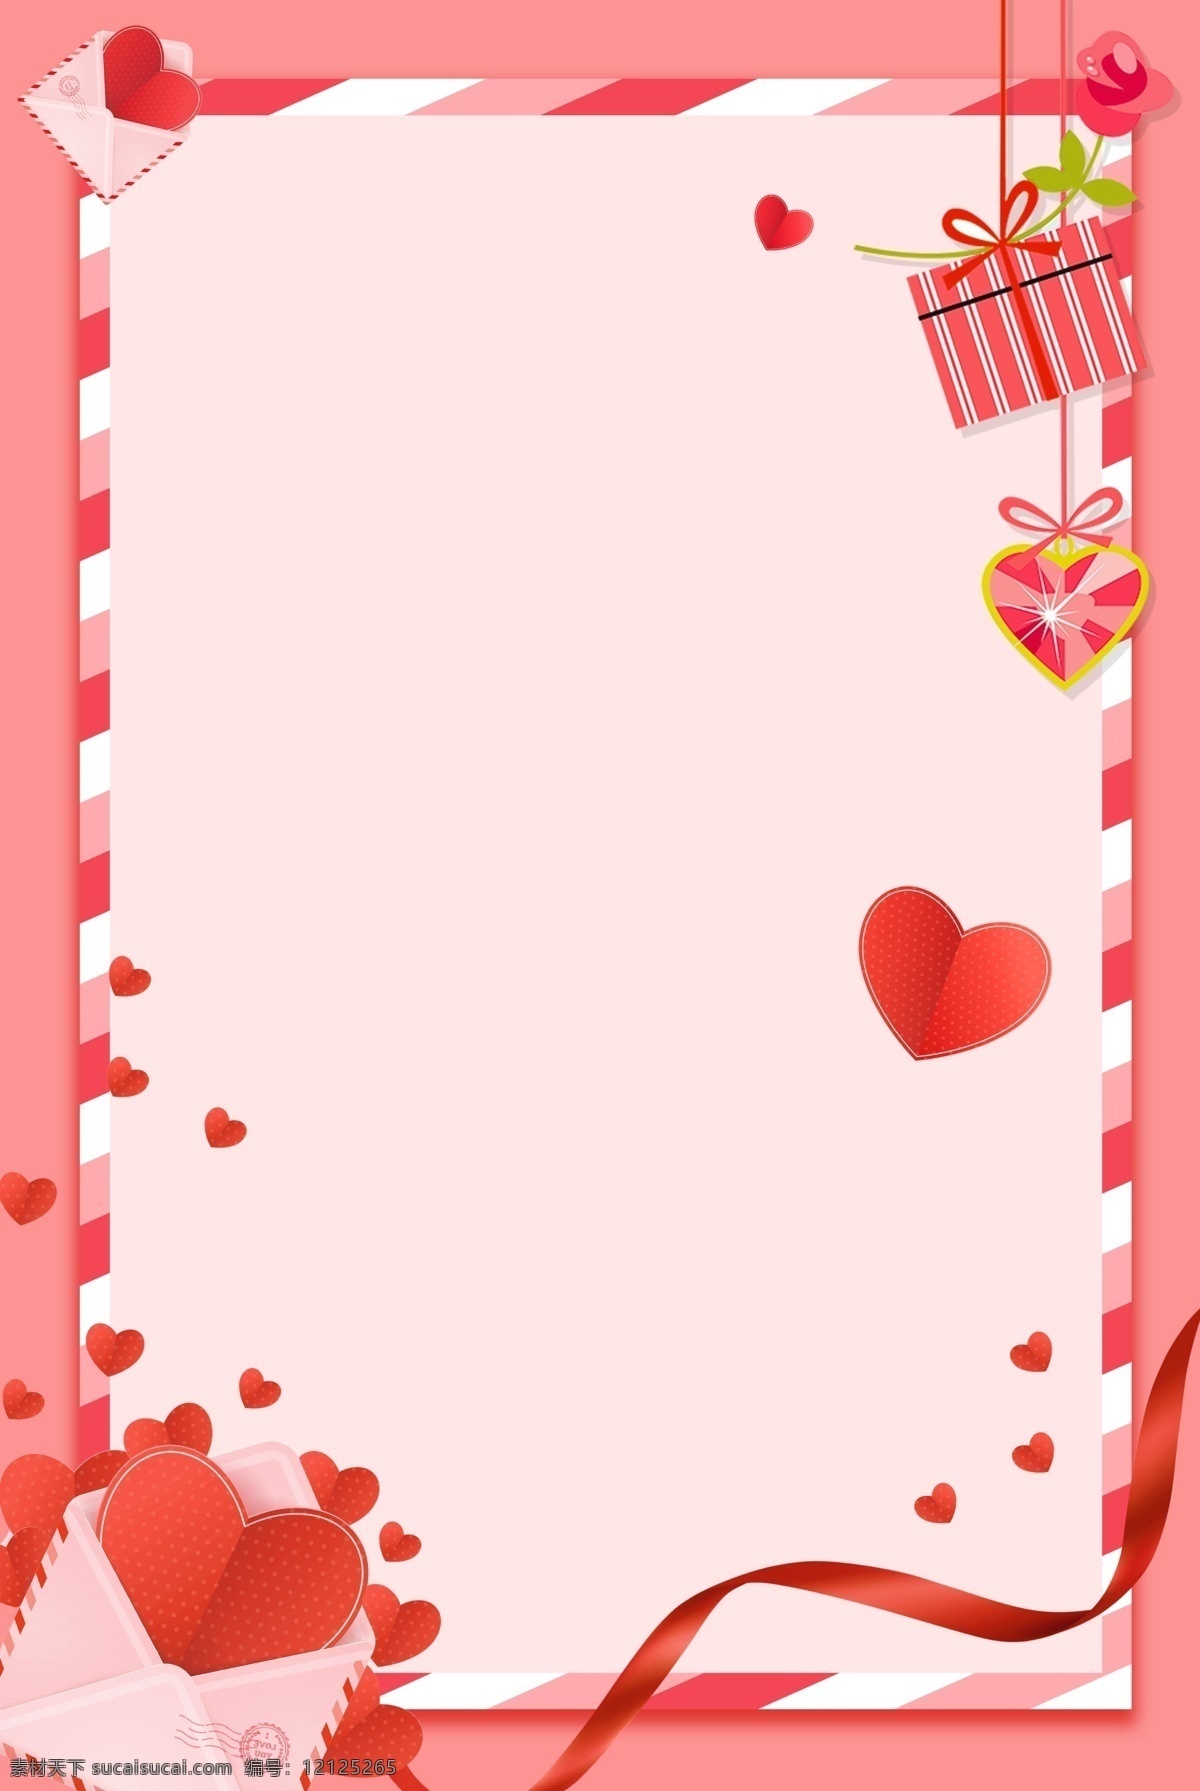 粉色 浪漫 边框 520 情人节 海报 背景 爱心 文艺 清新 卡通 手绘 质感 纹理